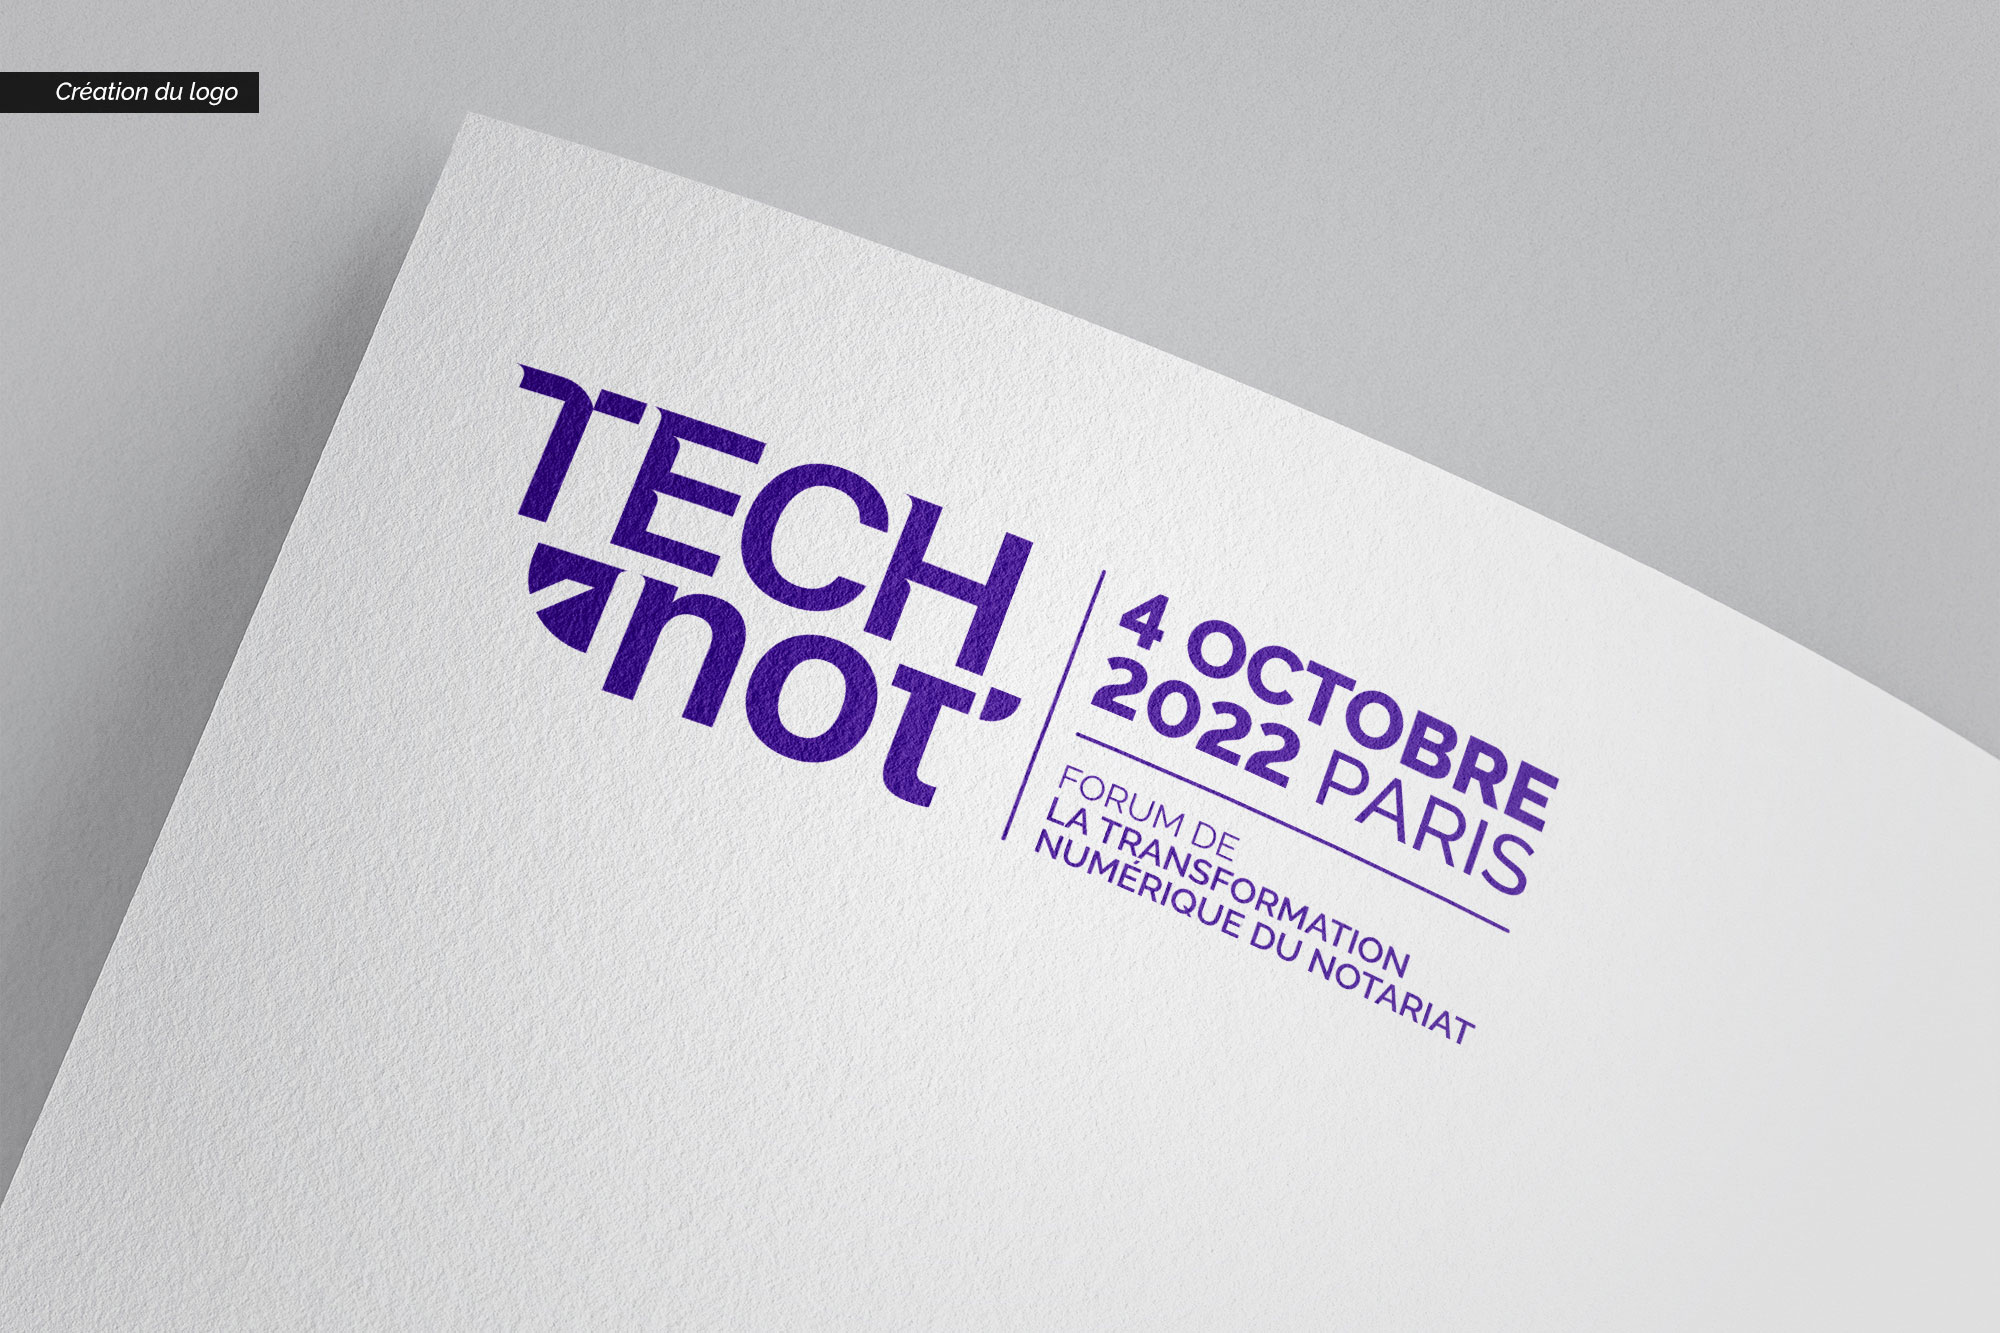 Logo Technot texte